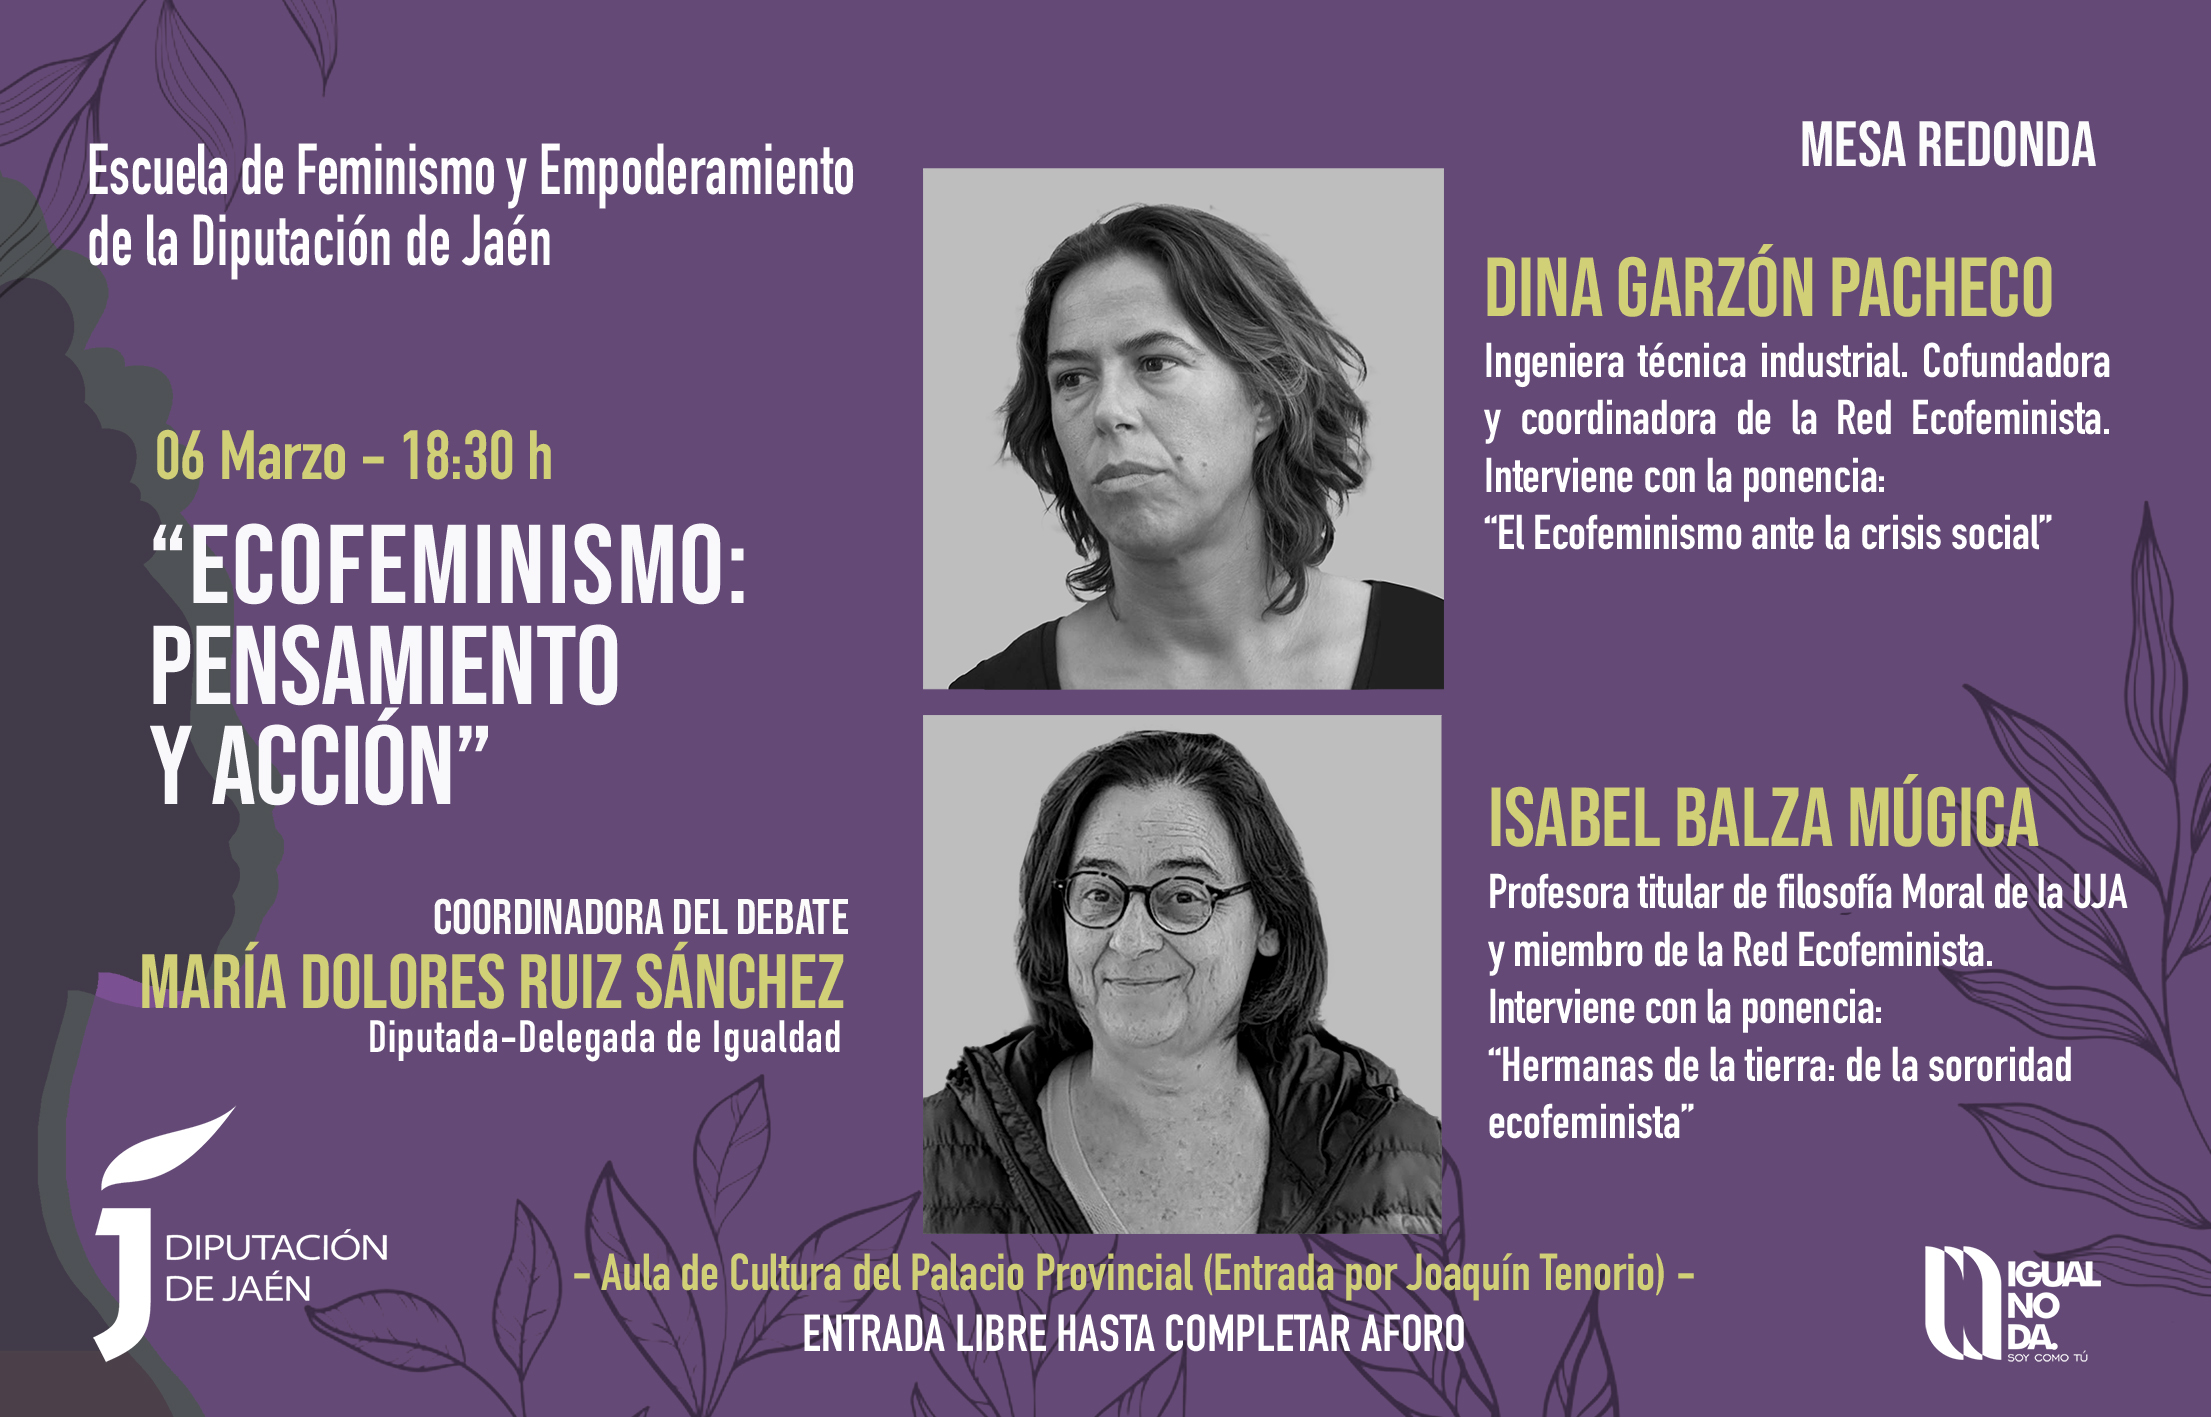 Curso- Historia de la teoría feminista -Escuela de Feminismo Diputación de Jaén